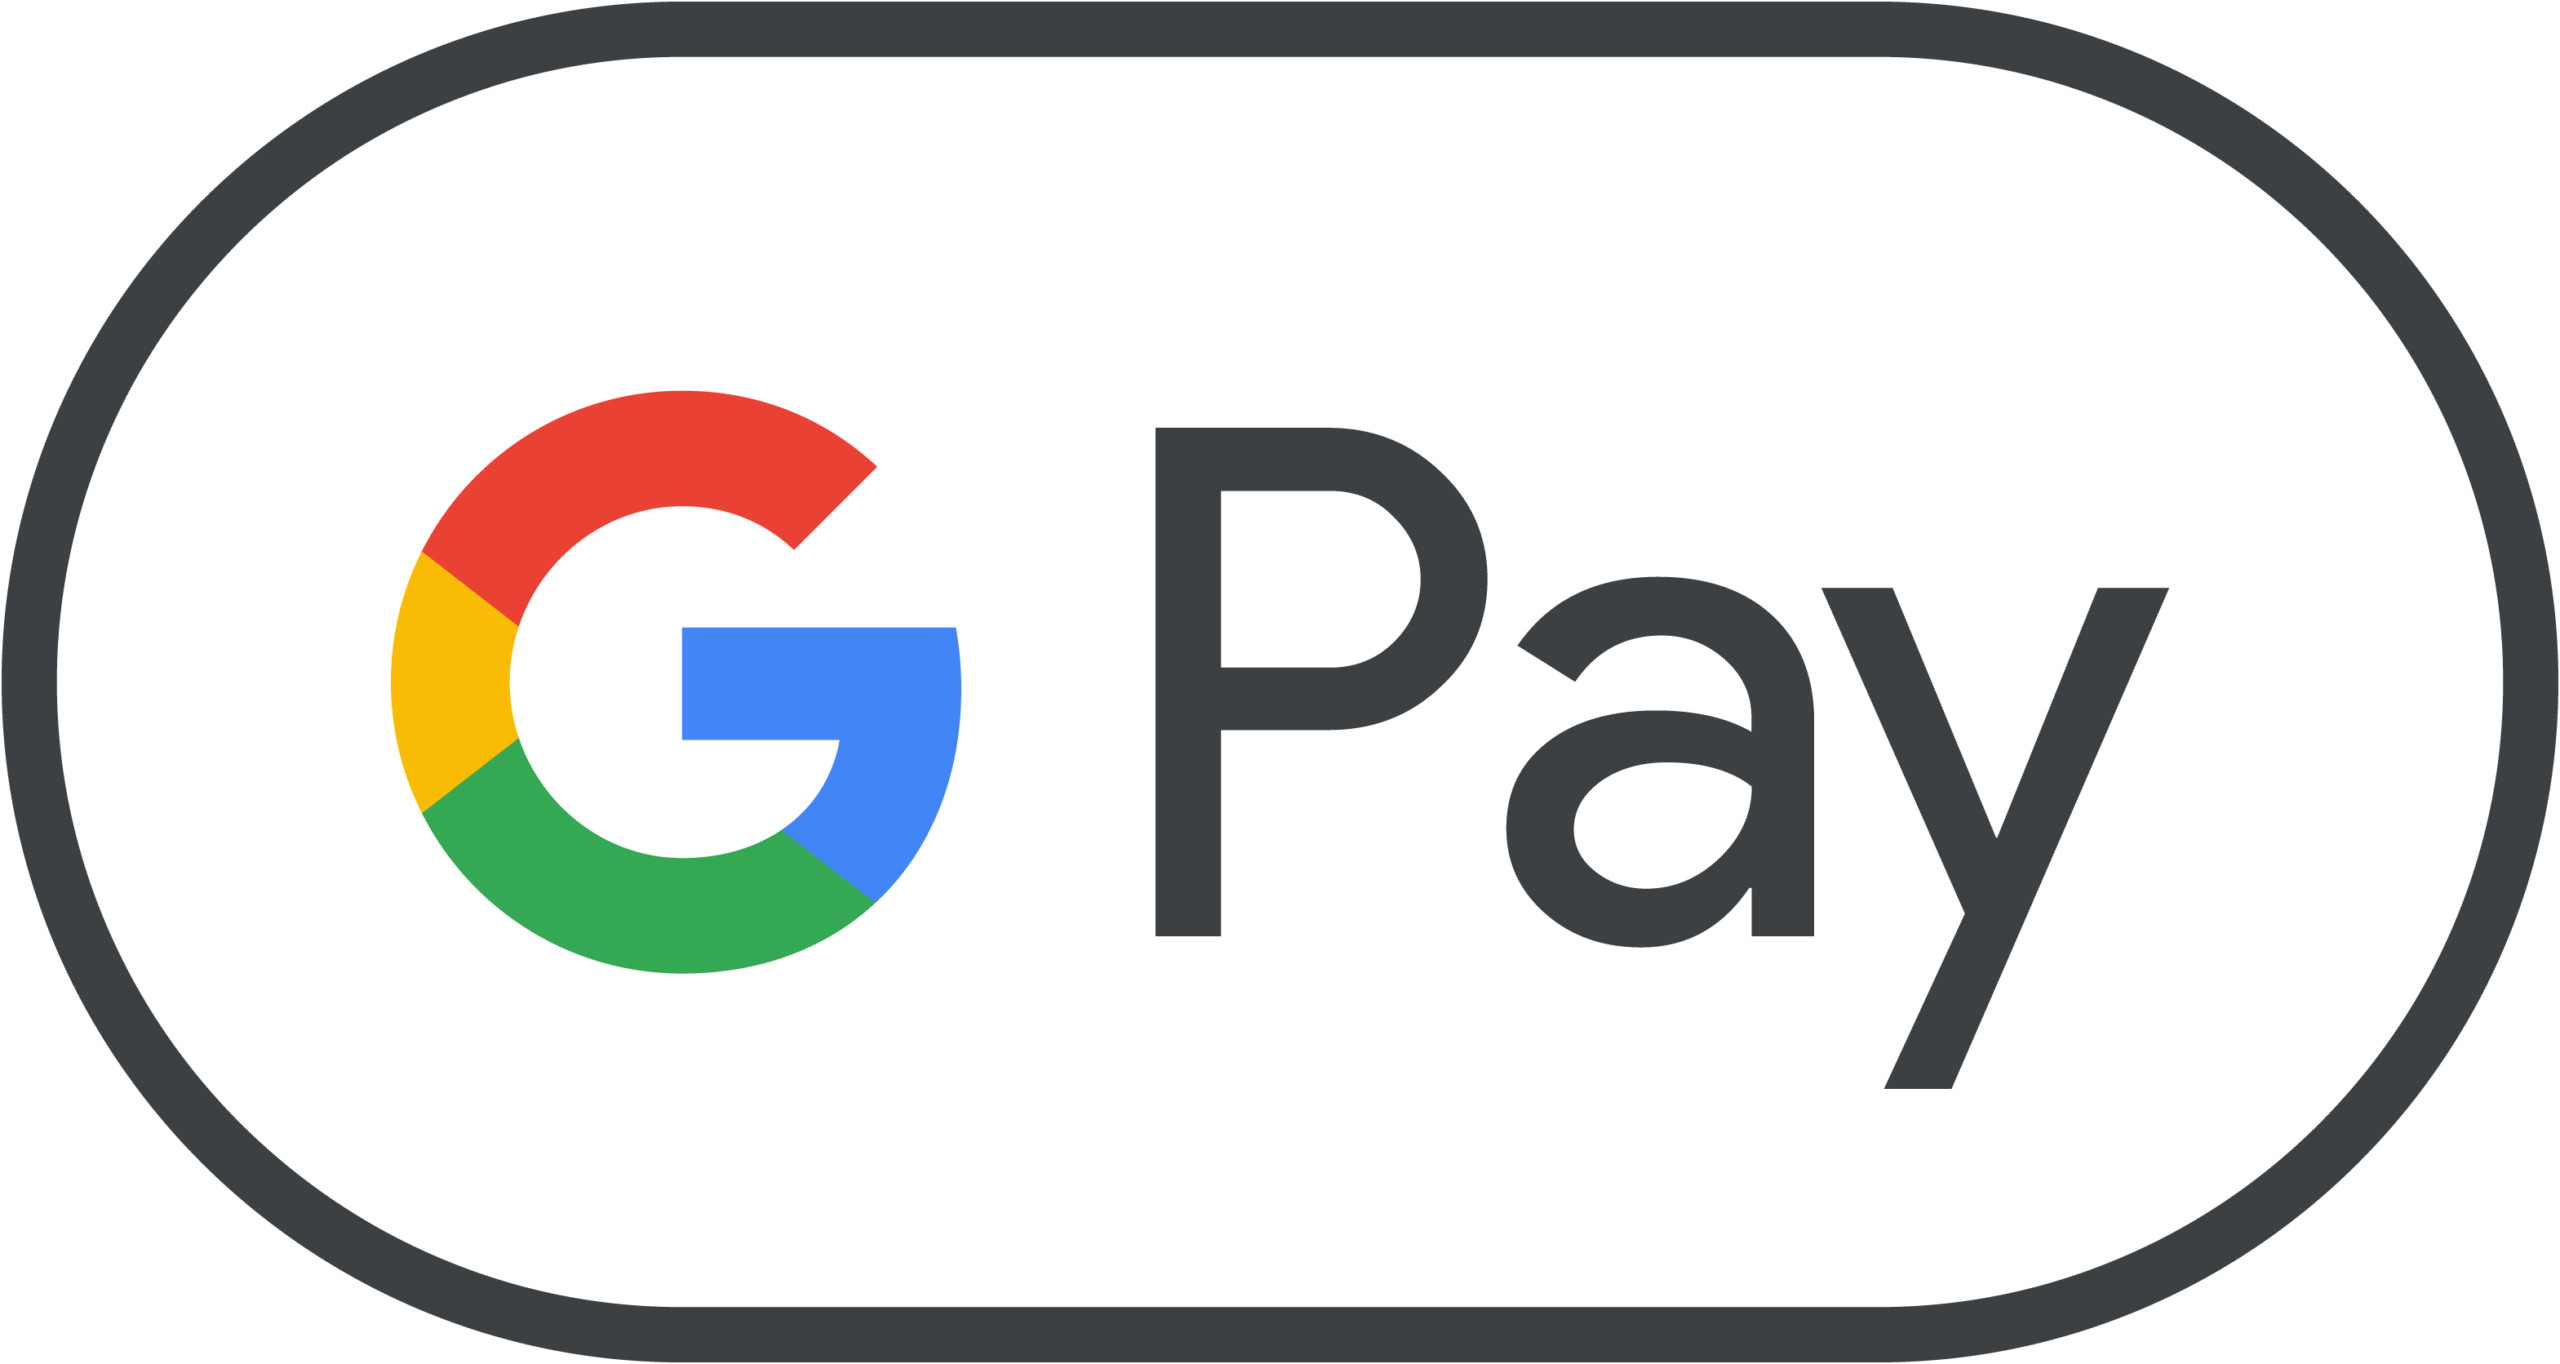 google-pay-mark_800